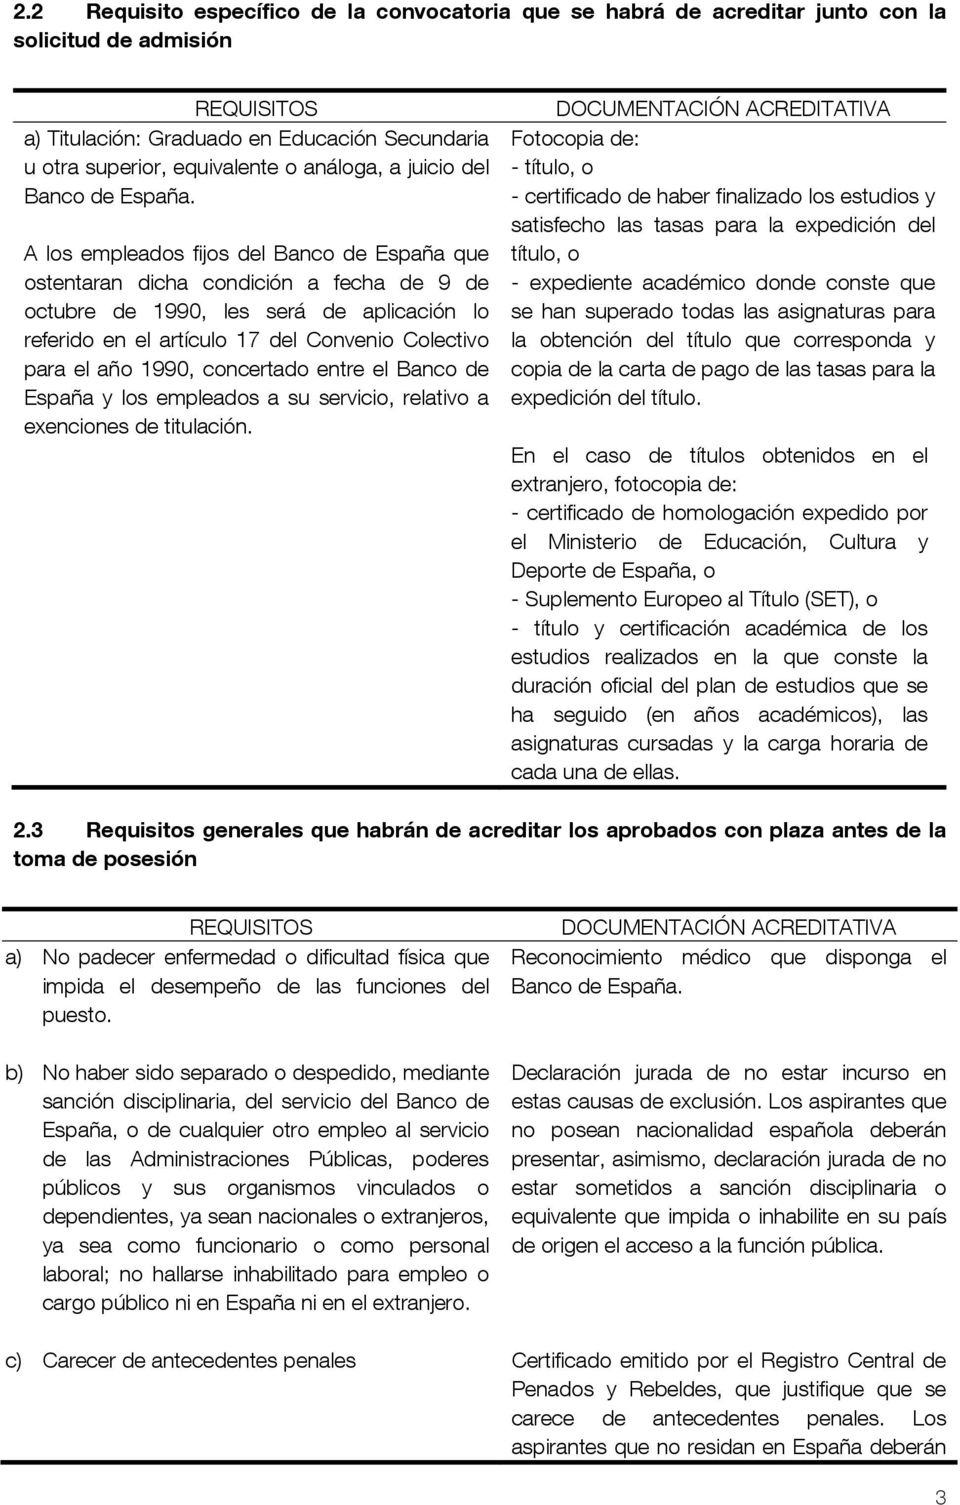 A los empleados fijos del Banco de España que ostentaran dicha condición a fecha de 9 de octubre de 1990, les será de aplicación lo referido en el artículo 17 del Convenio Colectivo para el año 1990,